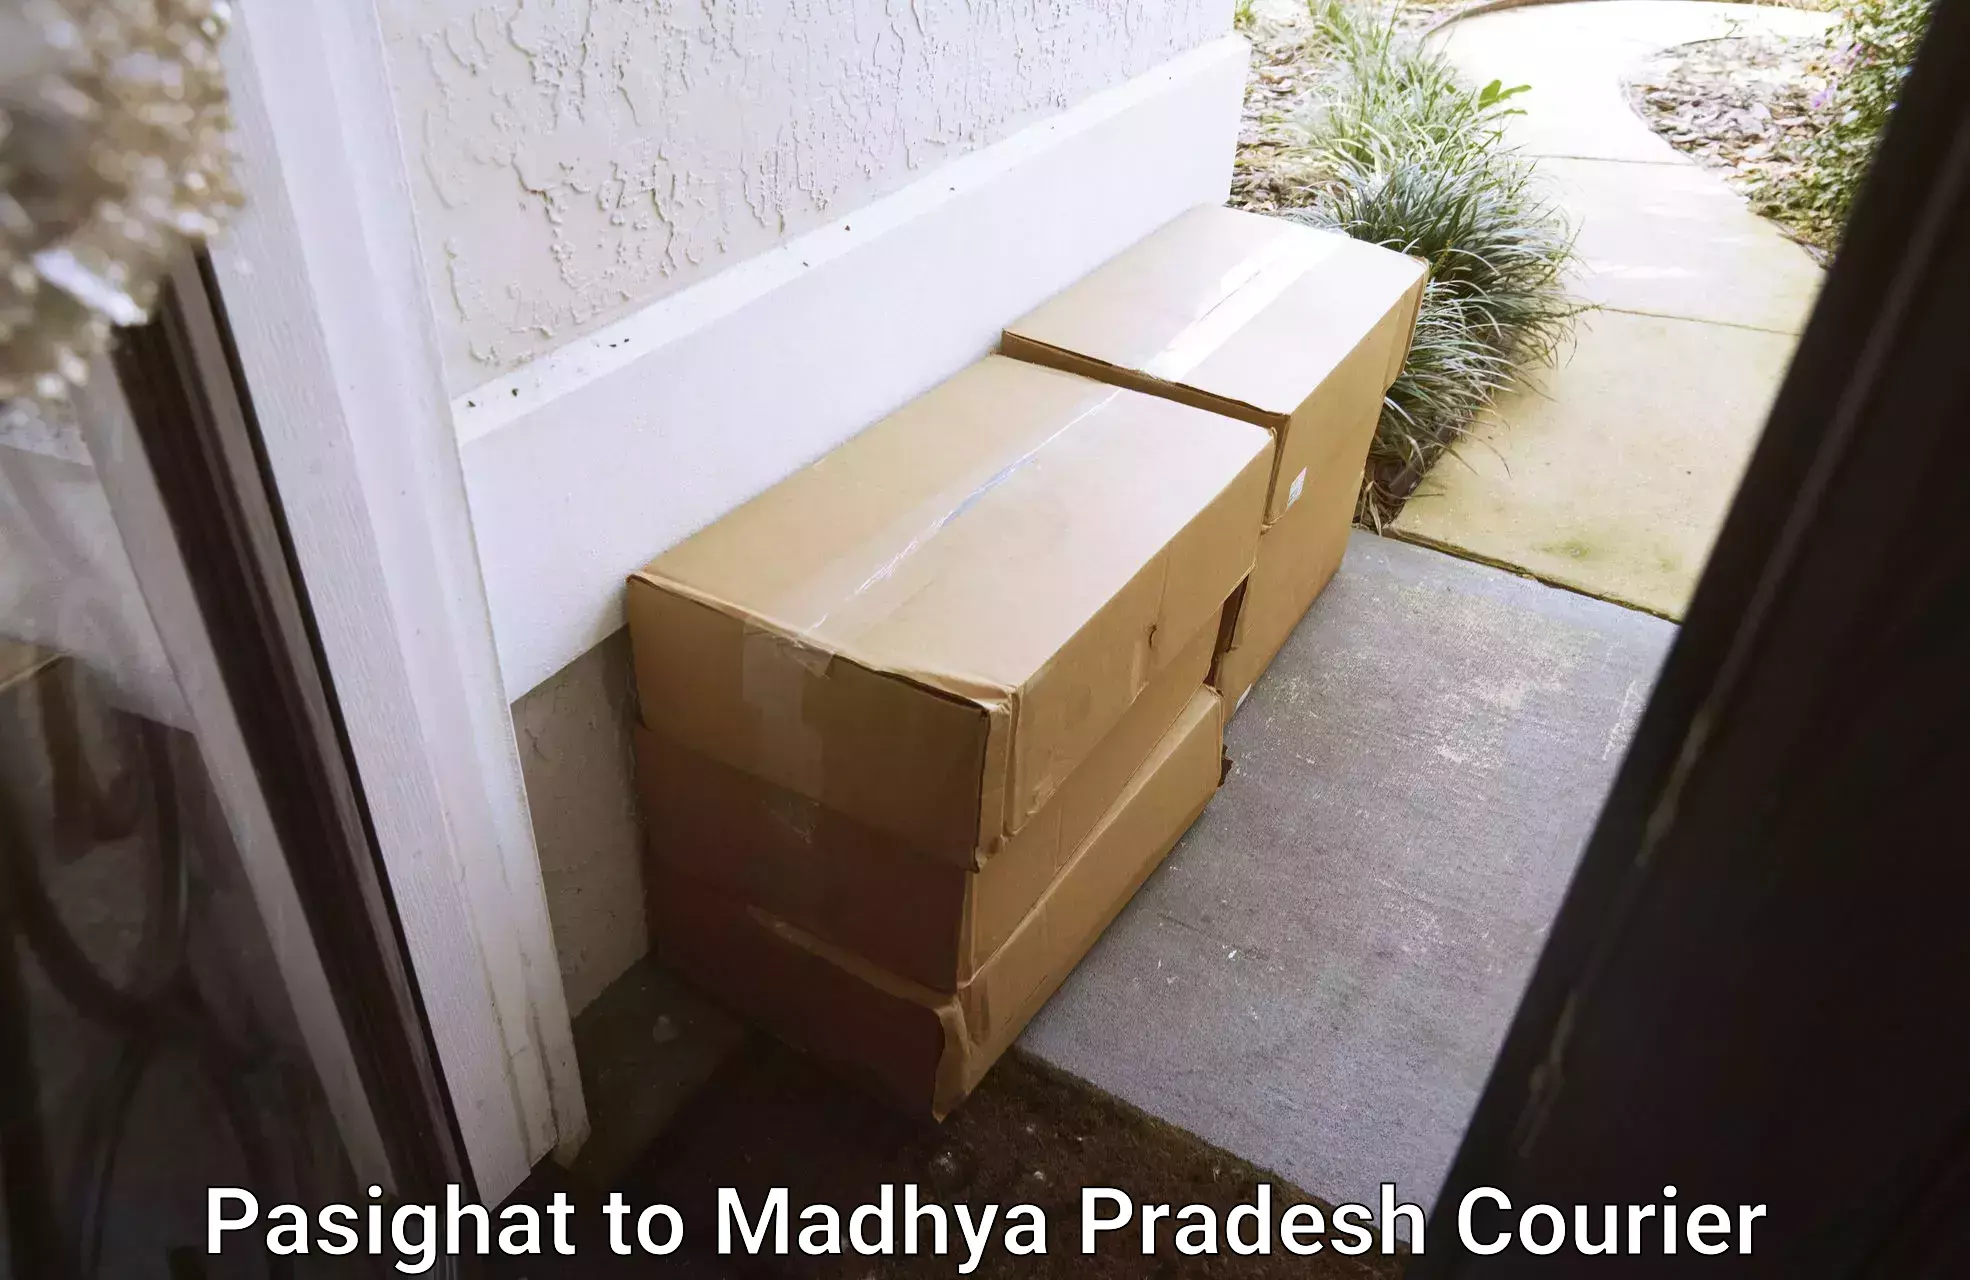 Fastest parcel delivery Pasighat to Ganj Basoda